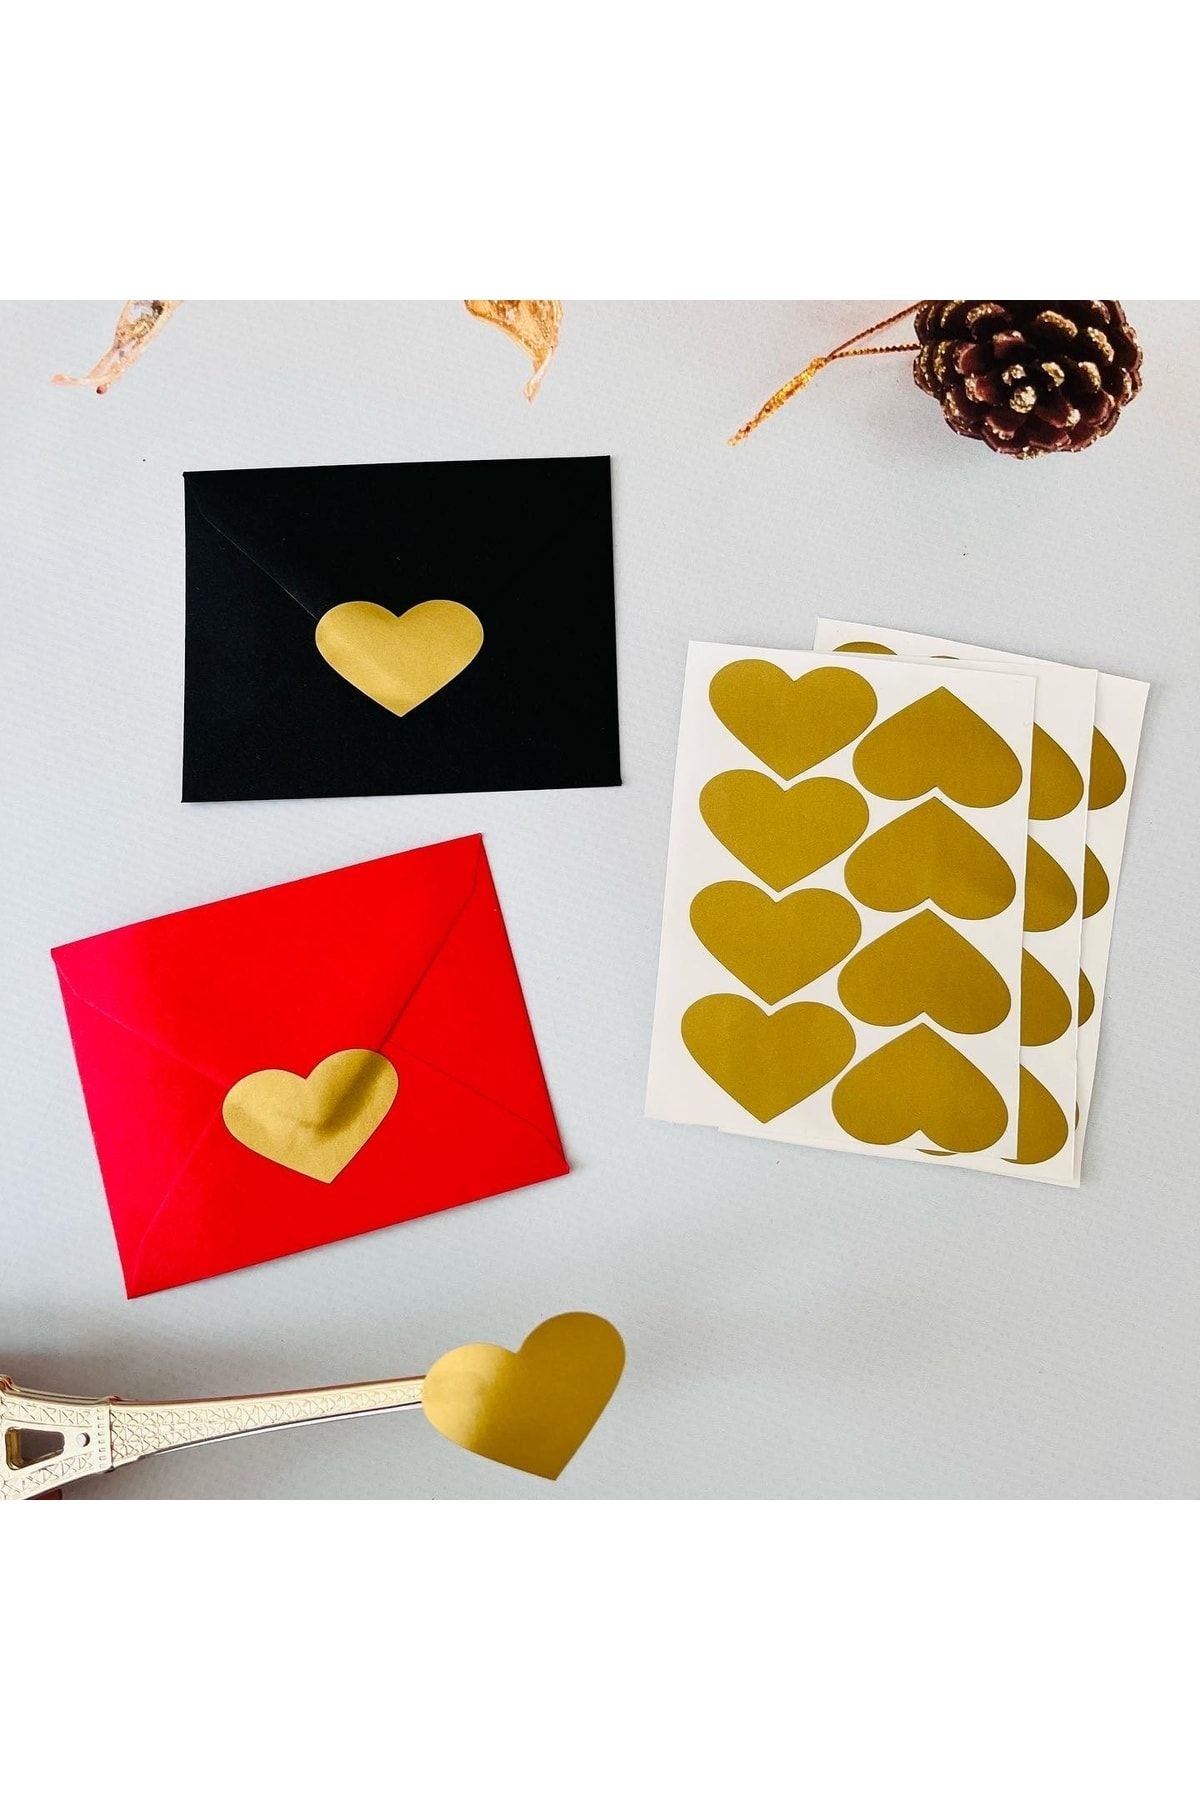 TUĞSET ETİKET Yapışkanlı Kalp Şekilli Gold Sticker Etiket Hediye Paketleme Parti Hediyeleri 24 Adet 3,5x2,5 Cm